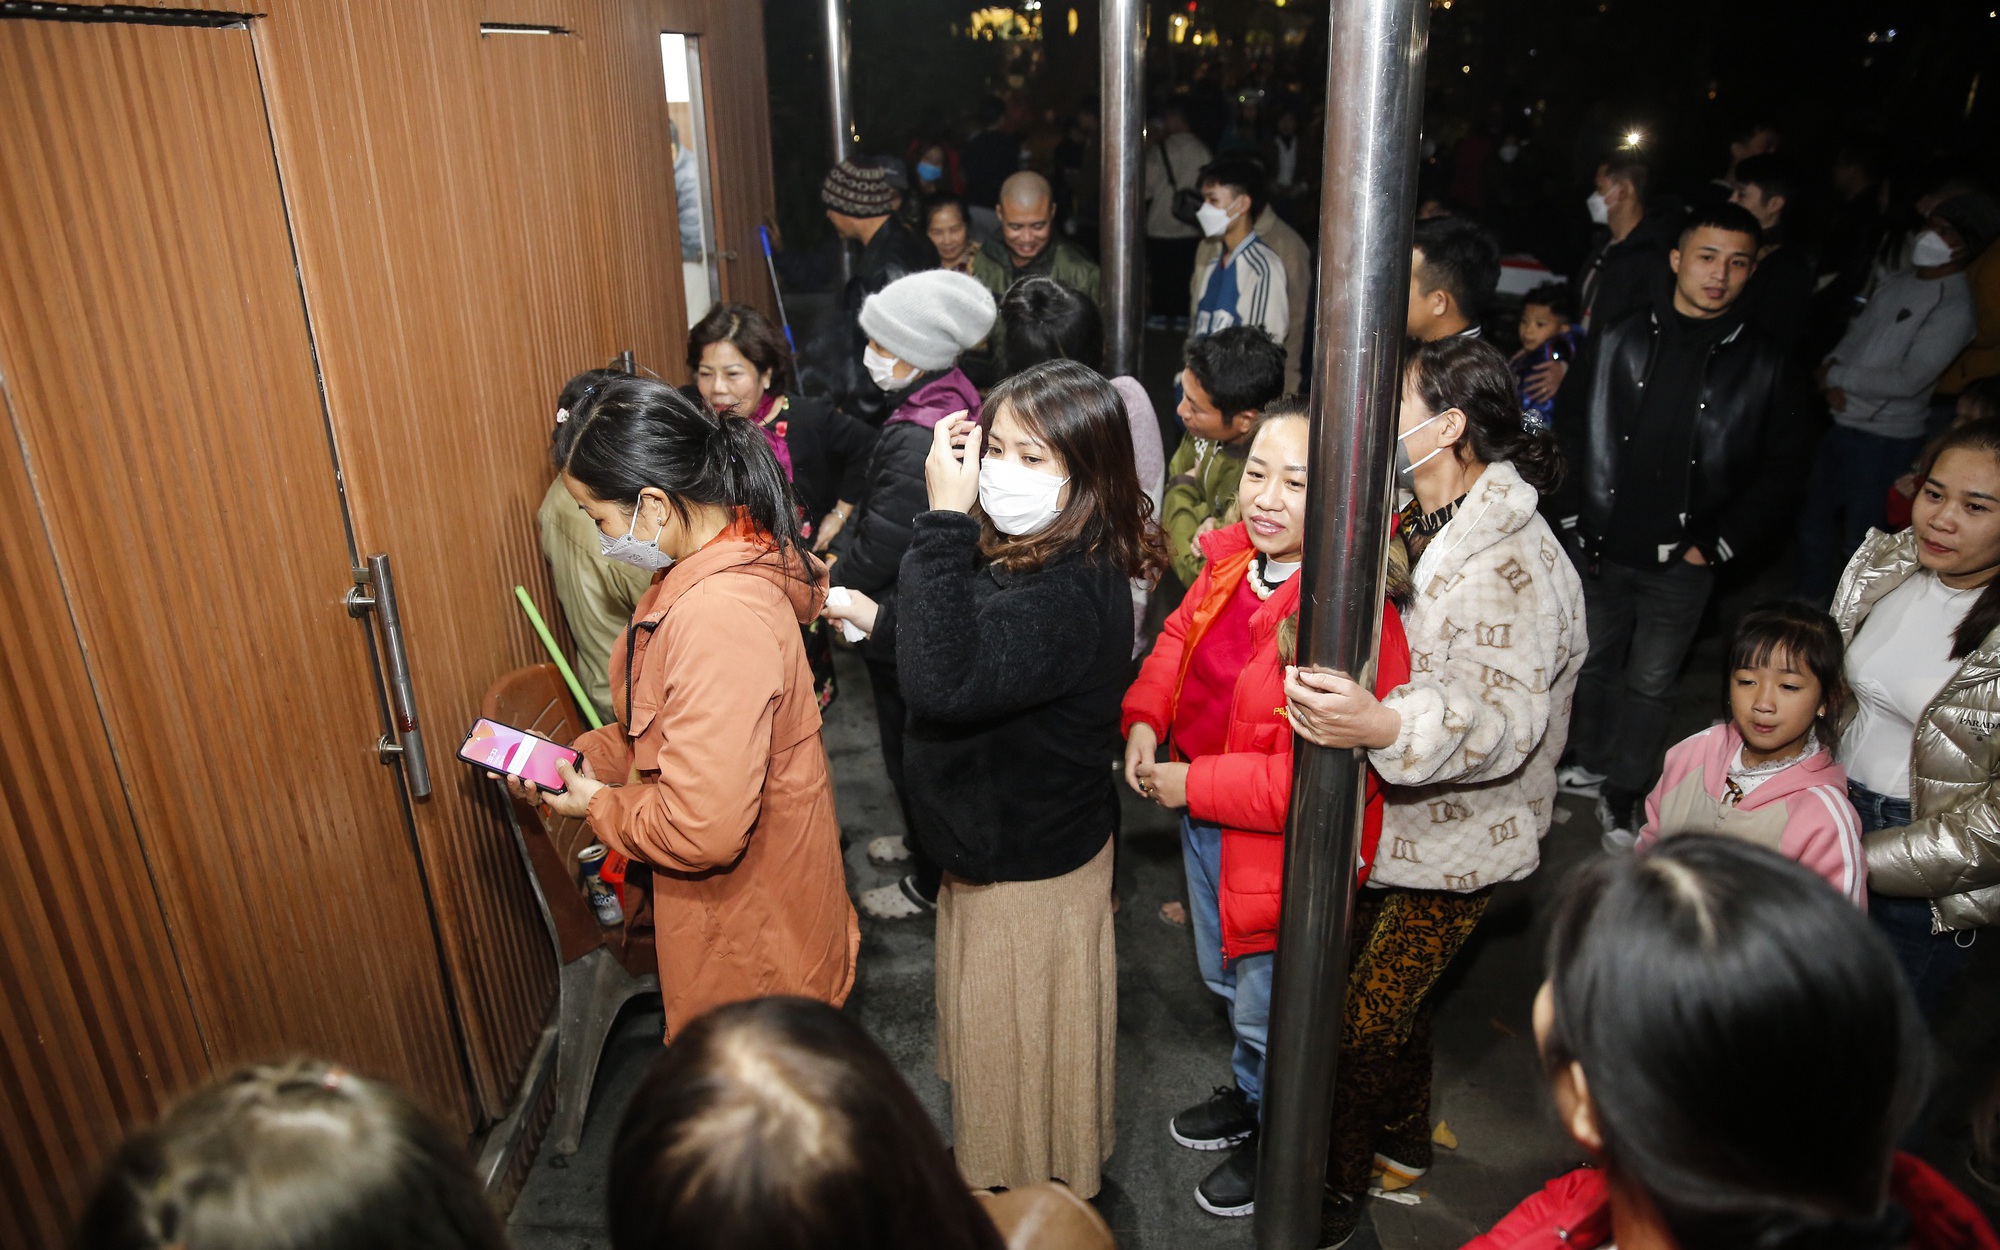 Đi đón Giáng sinh, người dân phải xếp hàng chờ cả tiếng đồng hồ để đi vệ sinh ở Hà Nội